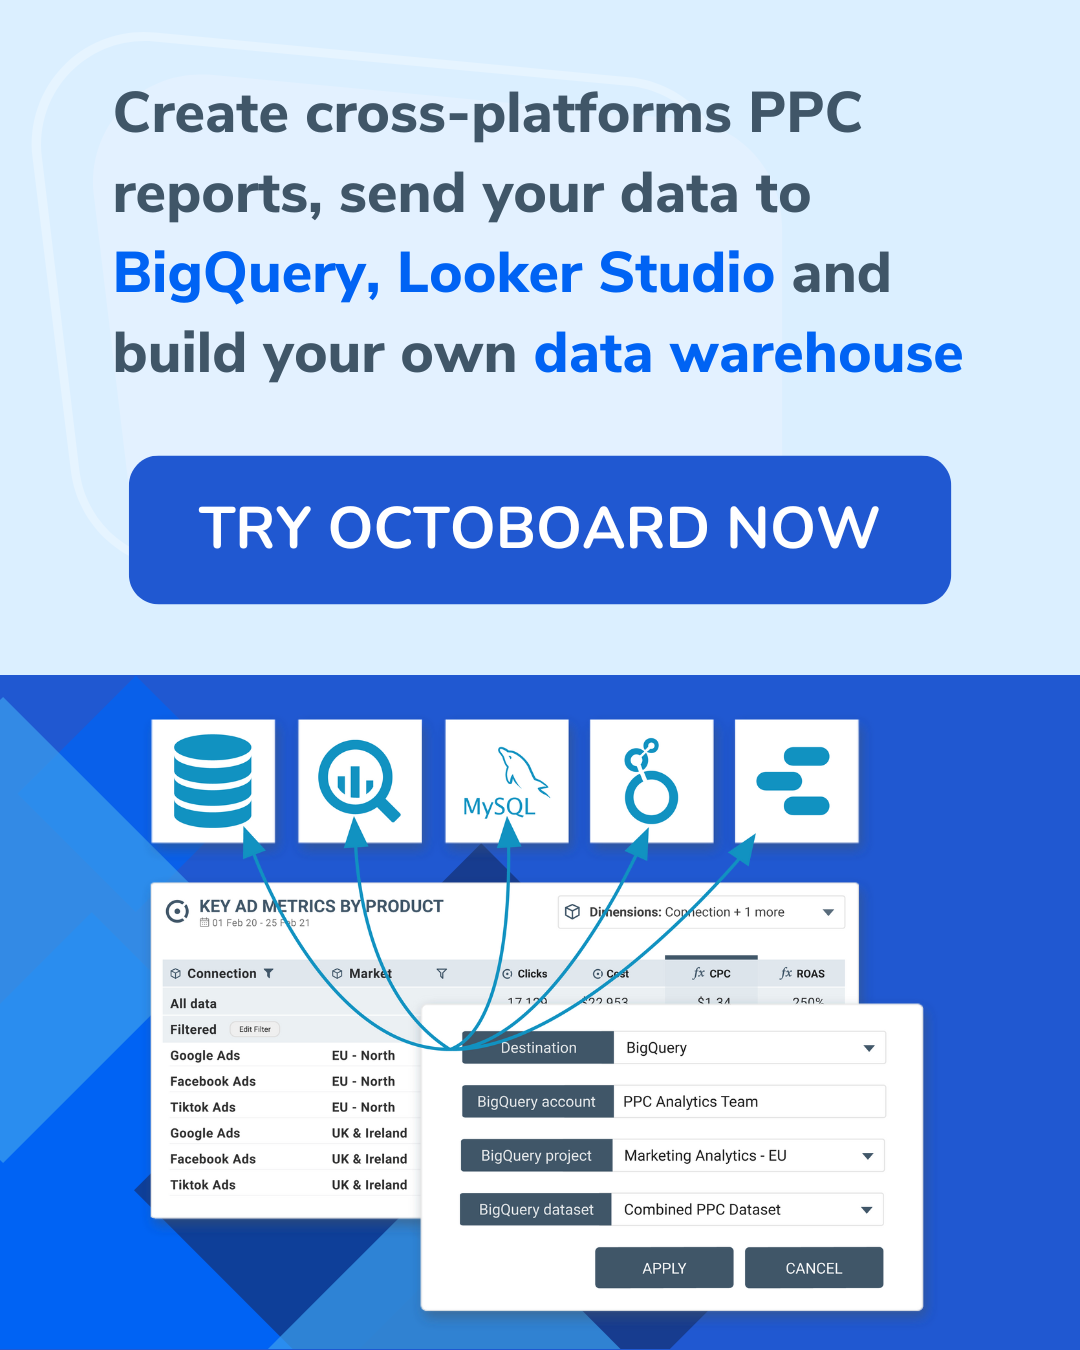 Creare report PPC multi-piattaforma, inviare i dati a BigQuery, Looker Studio e costruire il proprio data warehouse.